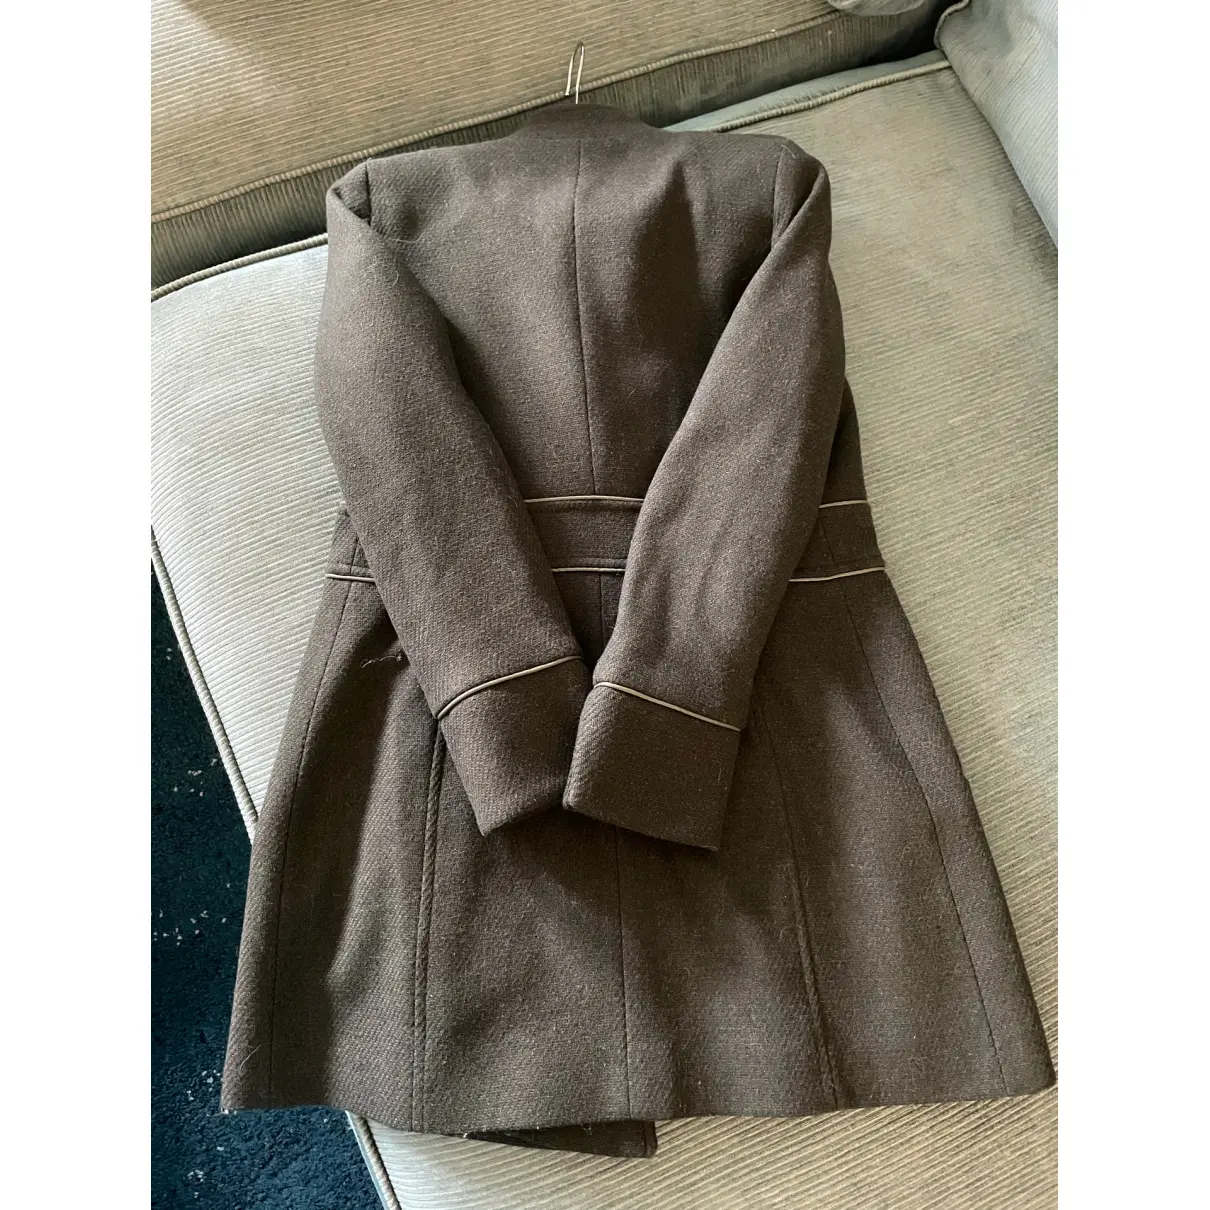 Buy SALSA Wool coat online